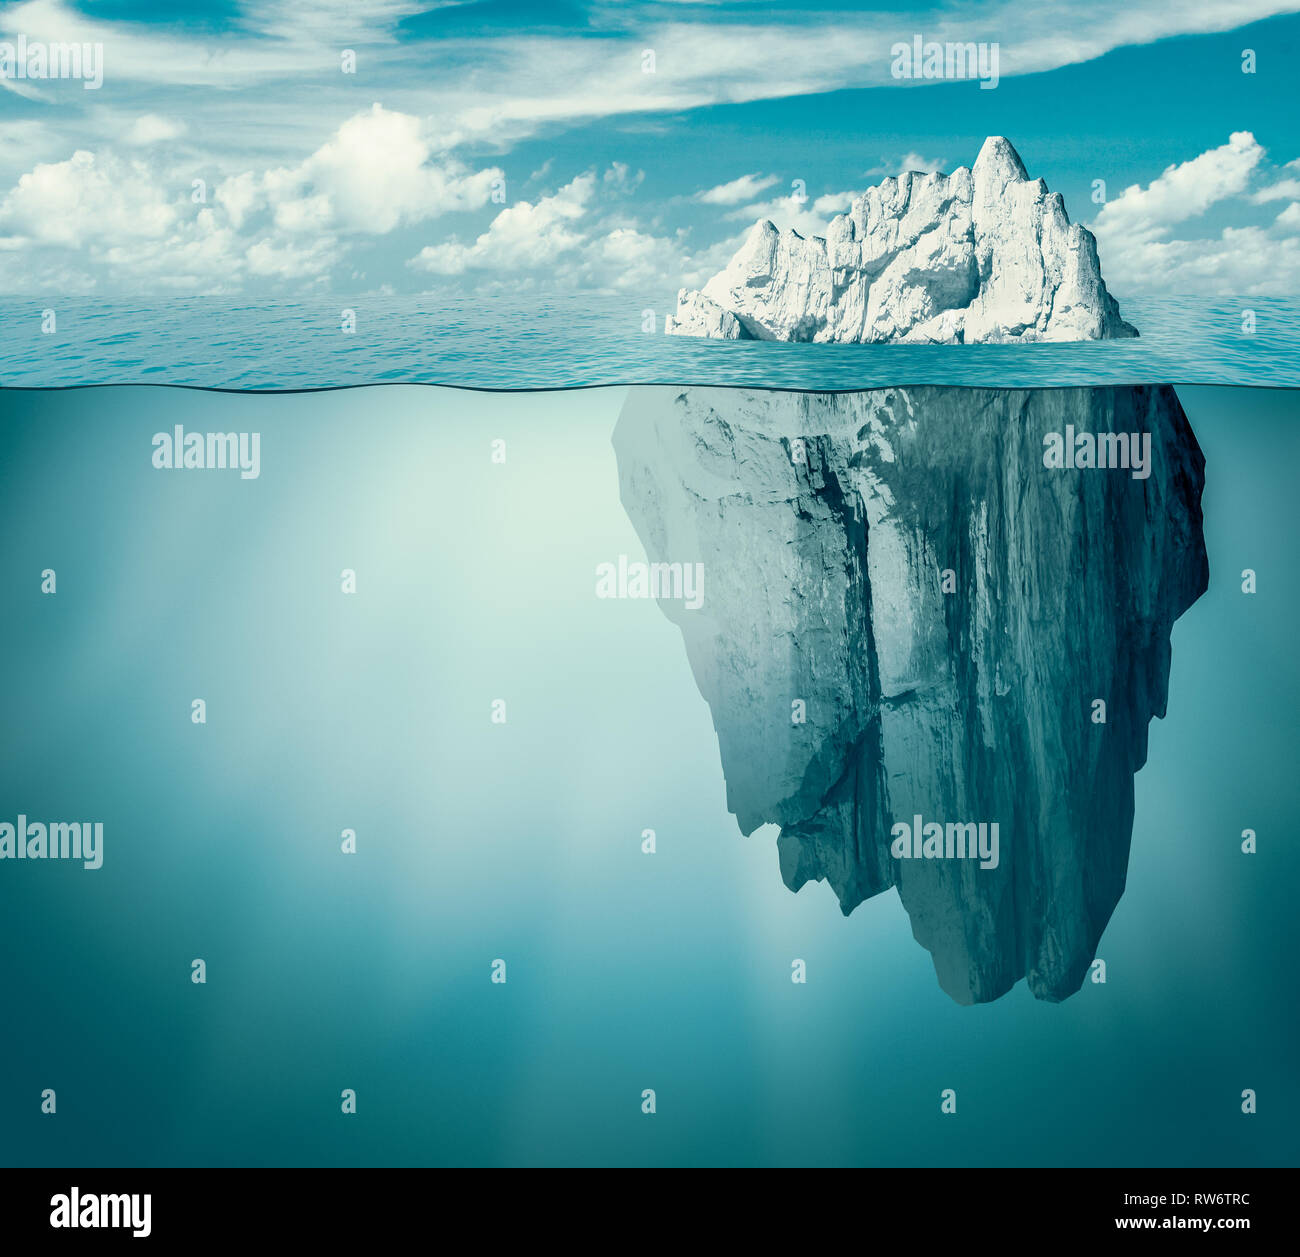 Iceberg in ocean as hidden danger concept Stock Photo